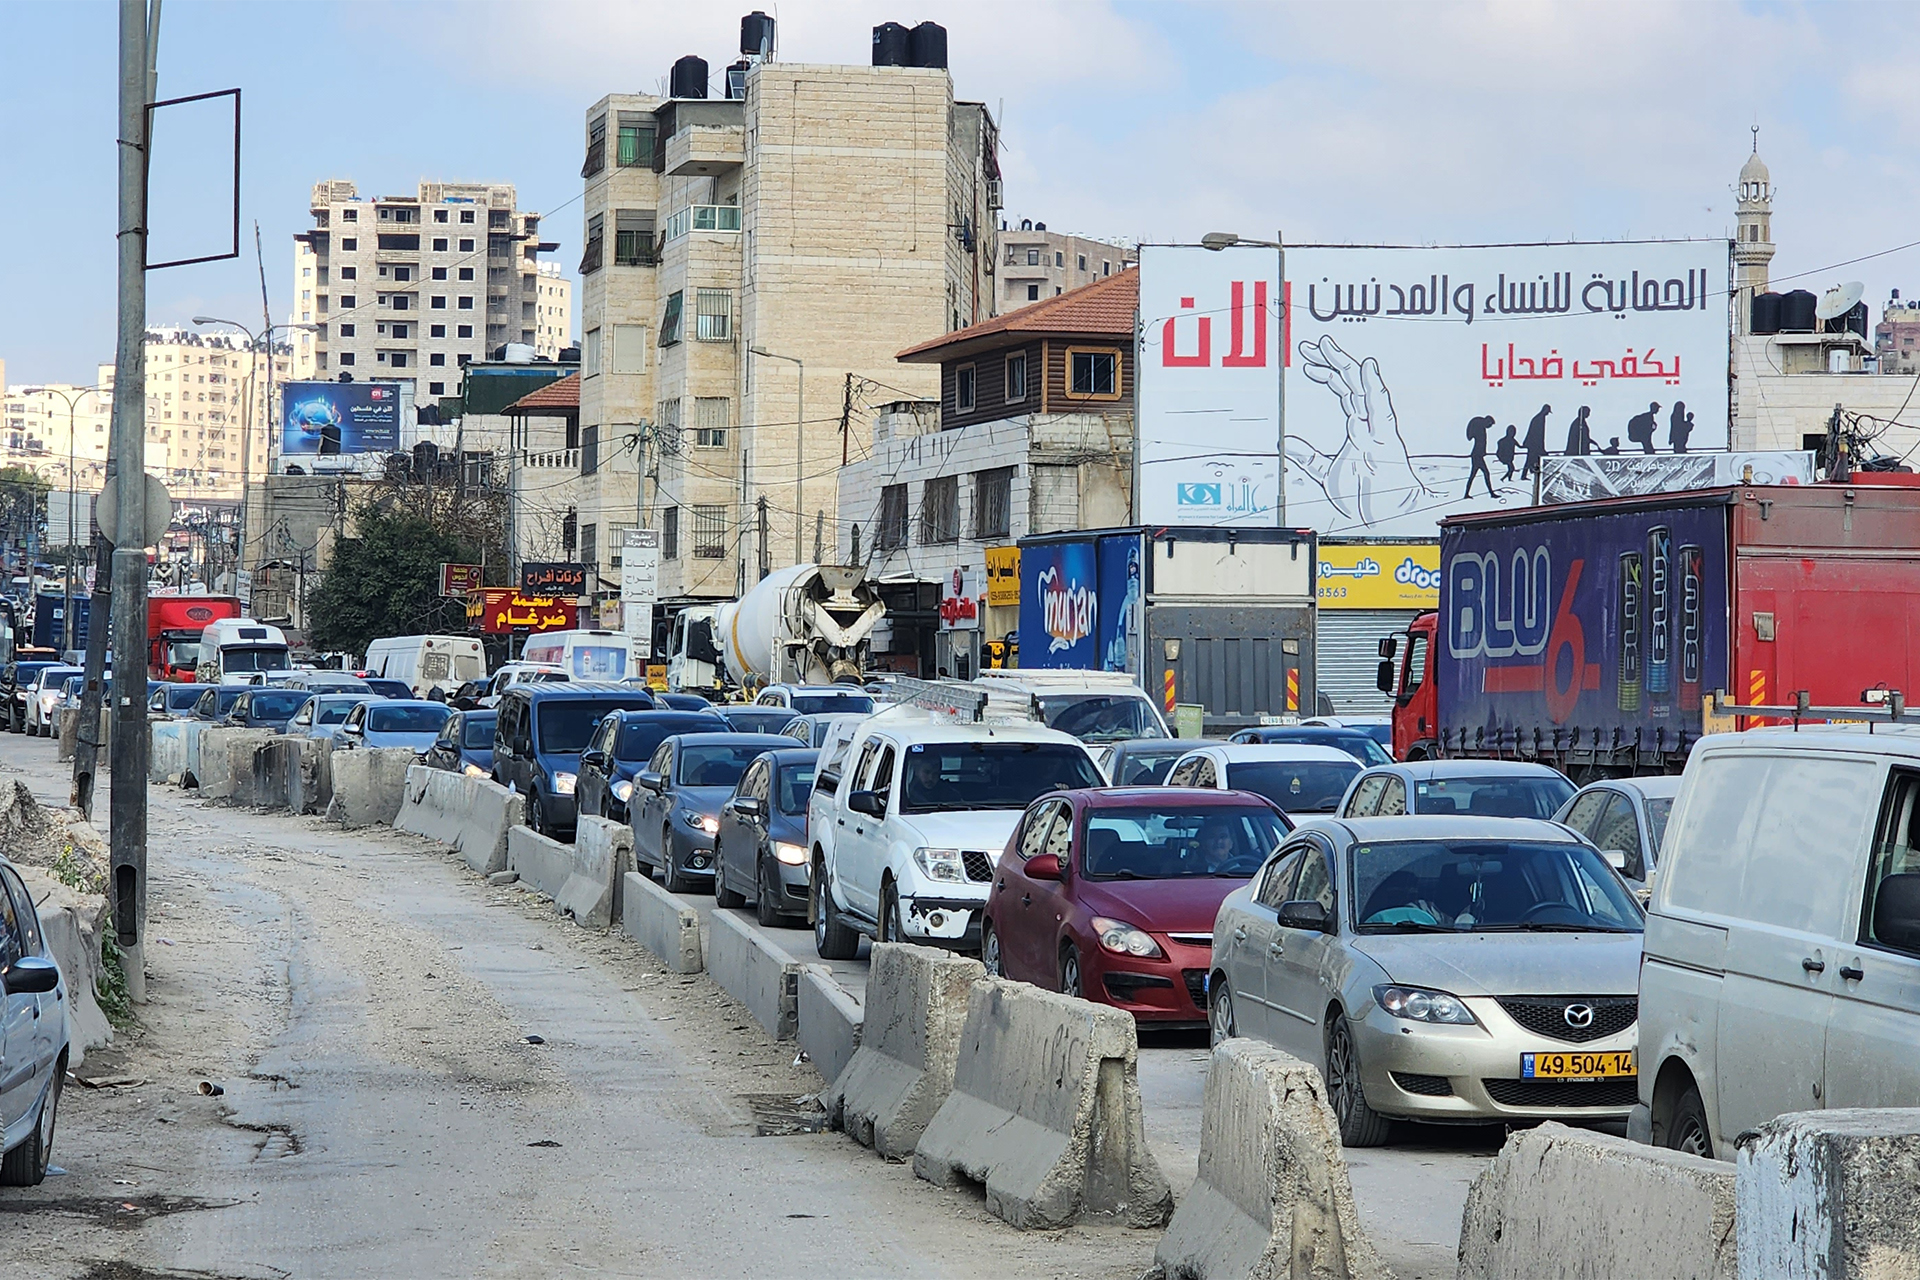 هكذا يستغل الاحتلال رمضان للبطش بفلسطينيي الضفة | سياسة – البوكس نيوز